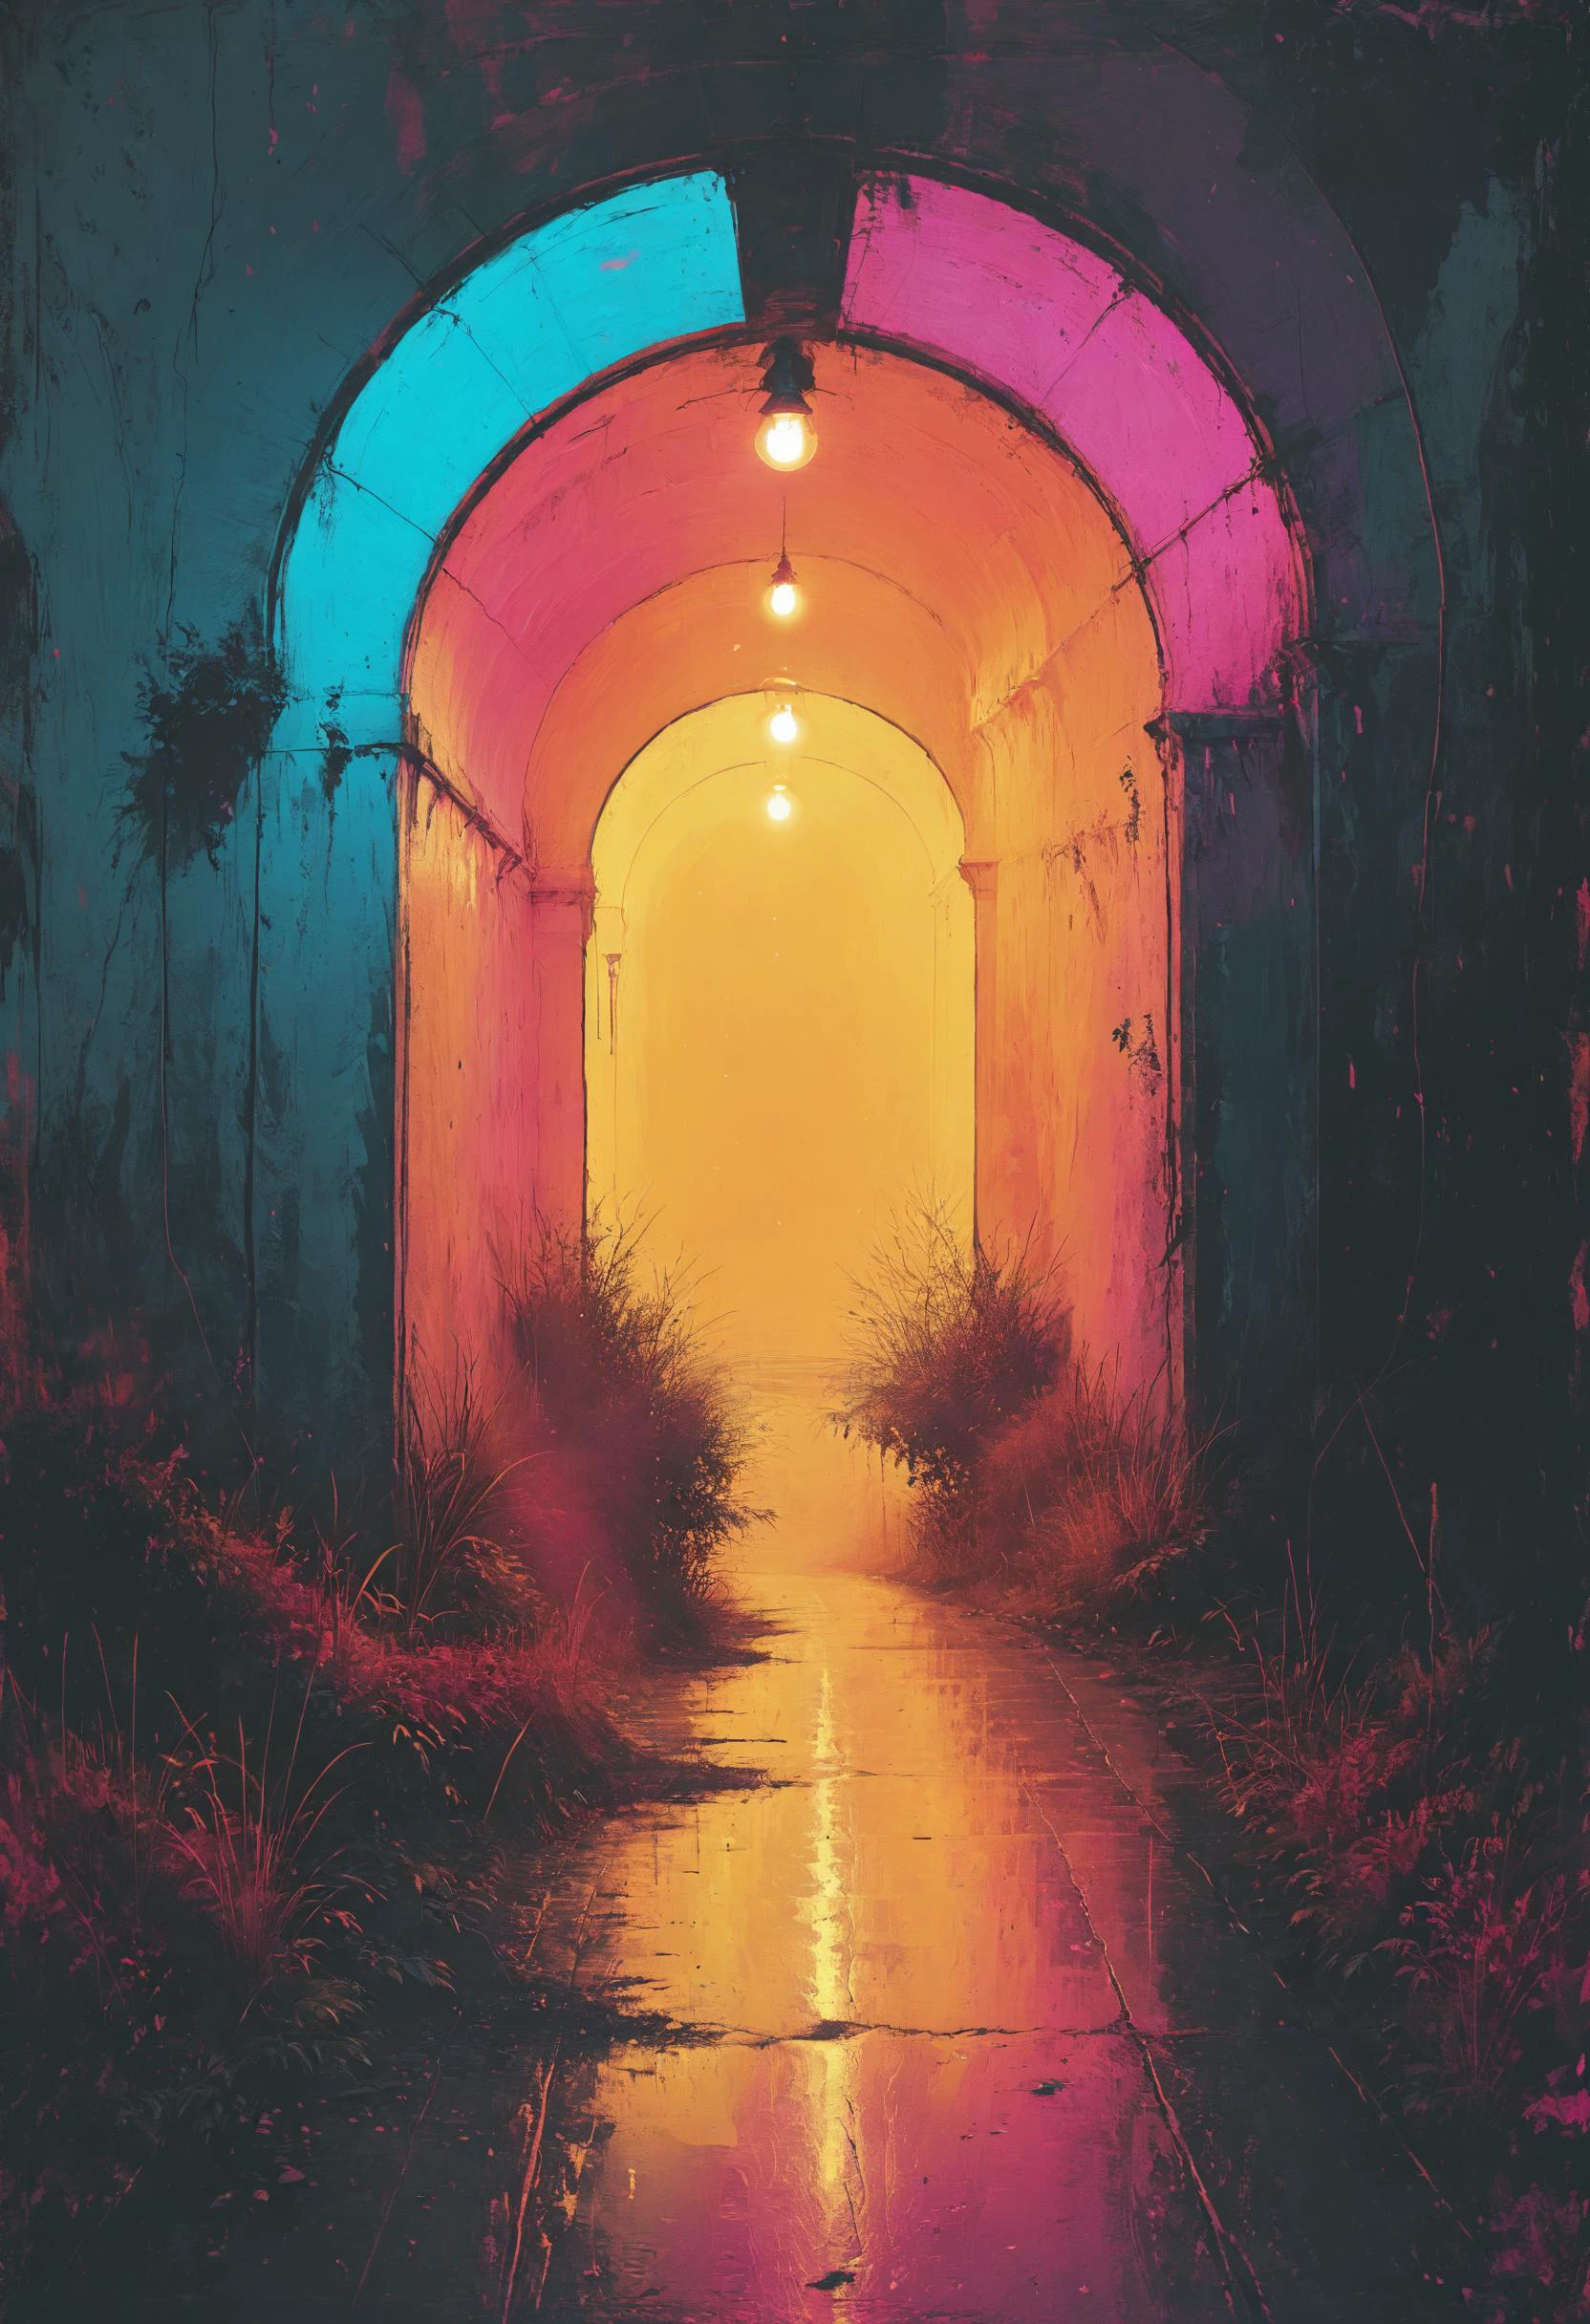 当你只能看到光的尽头的隧道时, 熄灯,  超过, 这是你生命的终结, 霓虹粉彩, 饱和的颜色